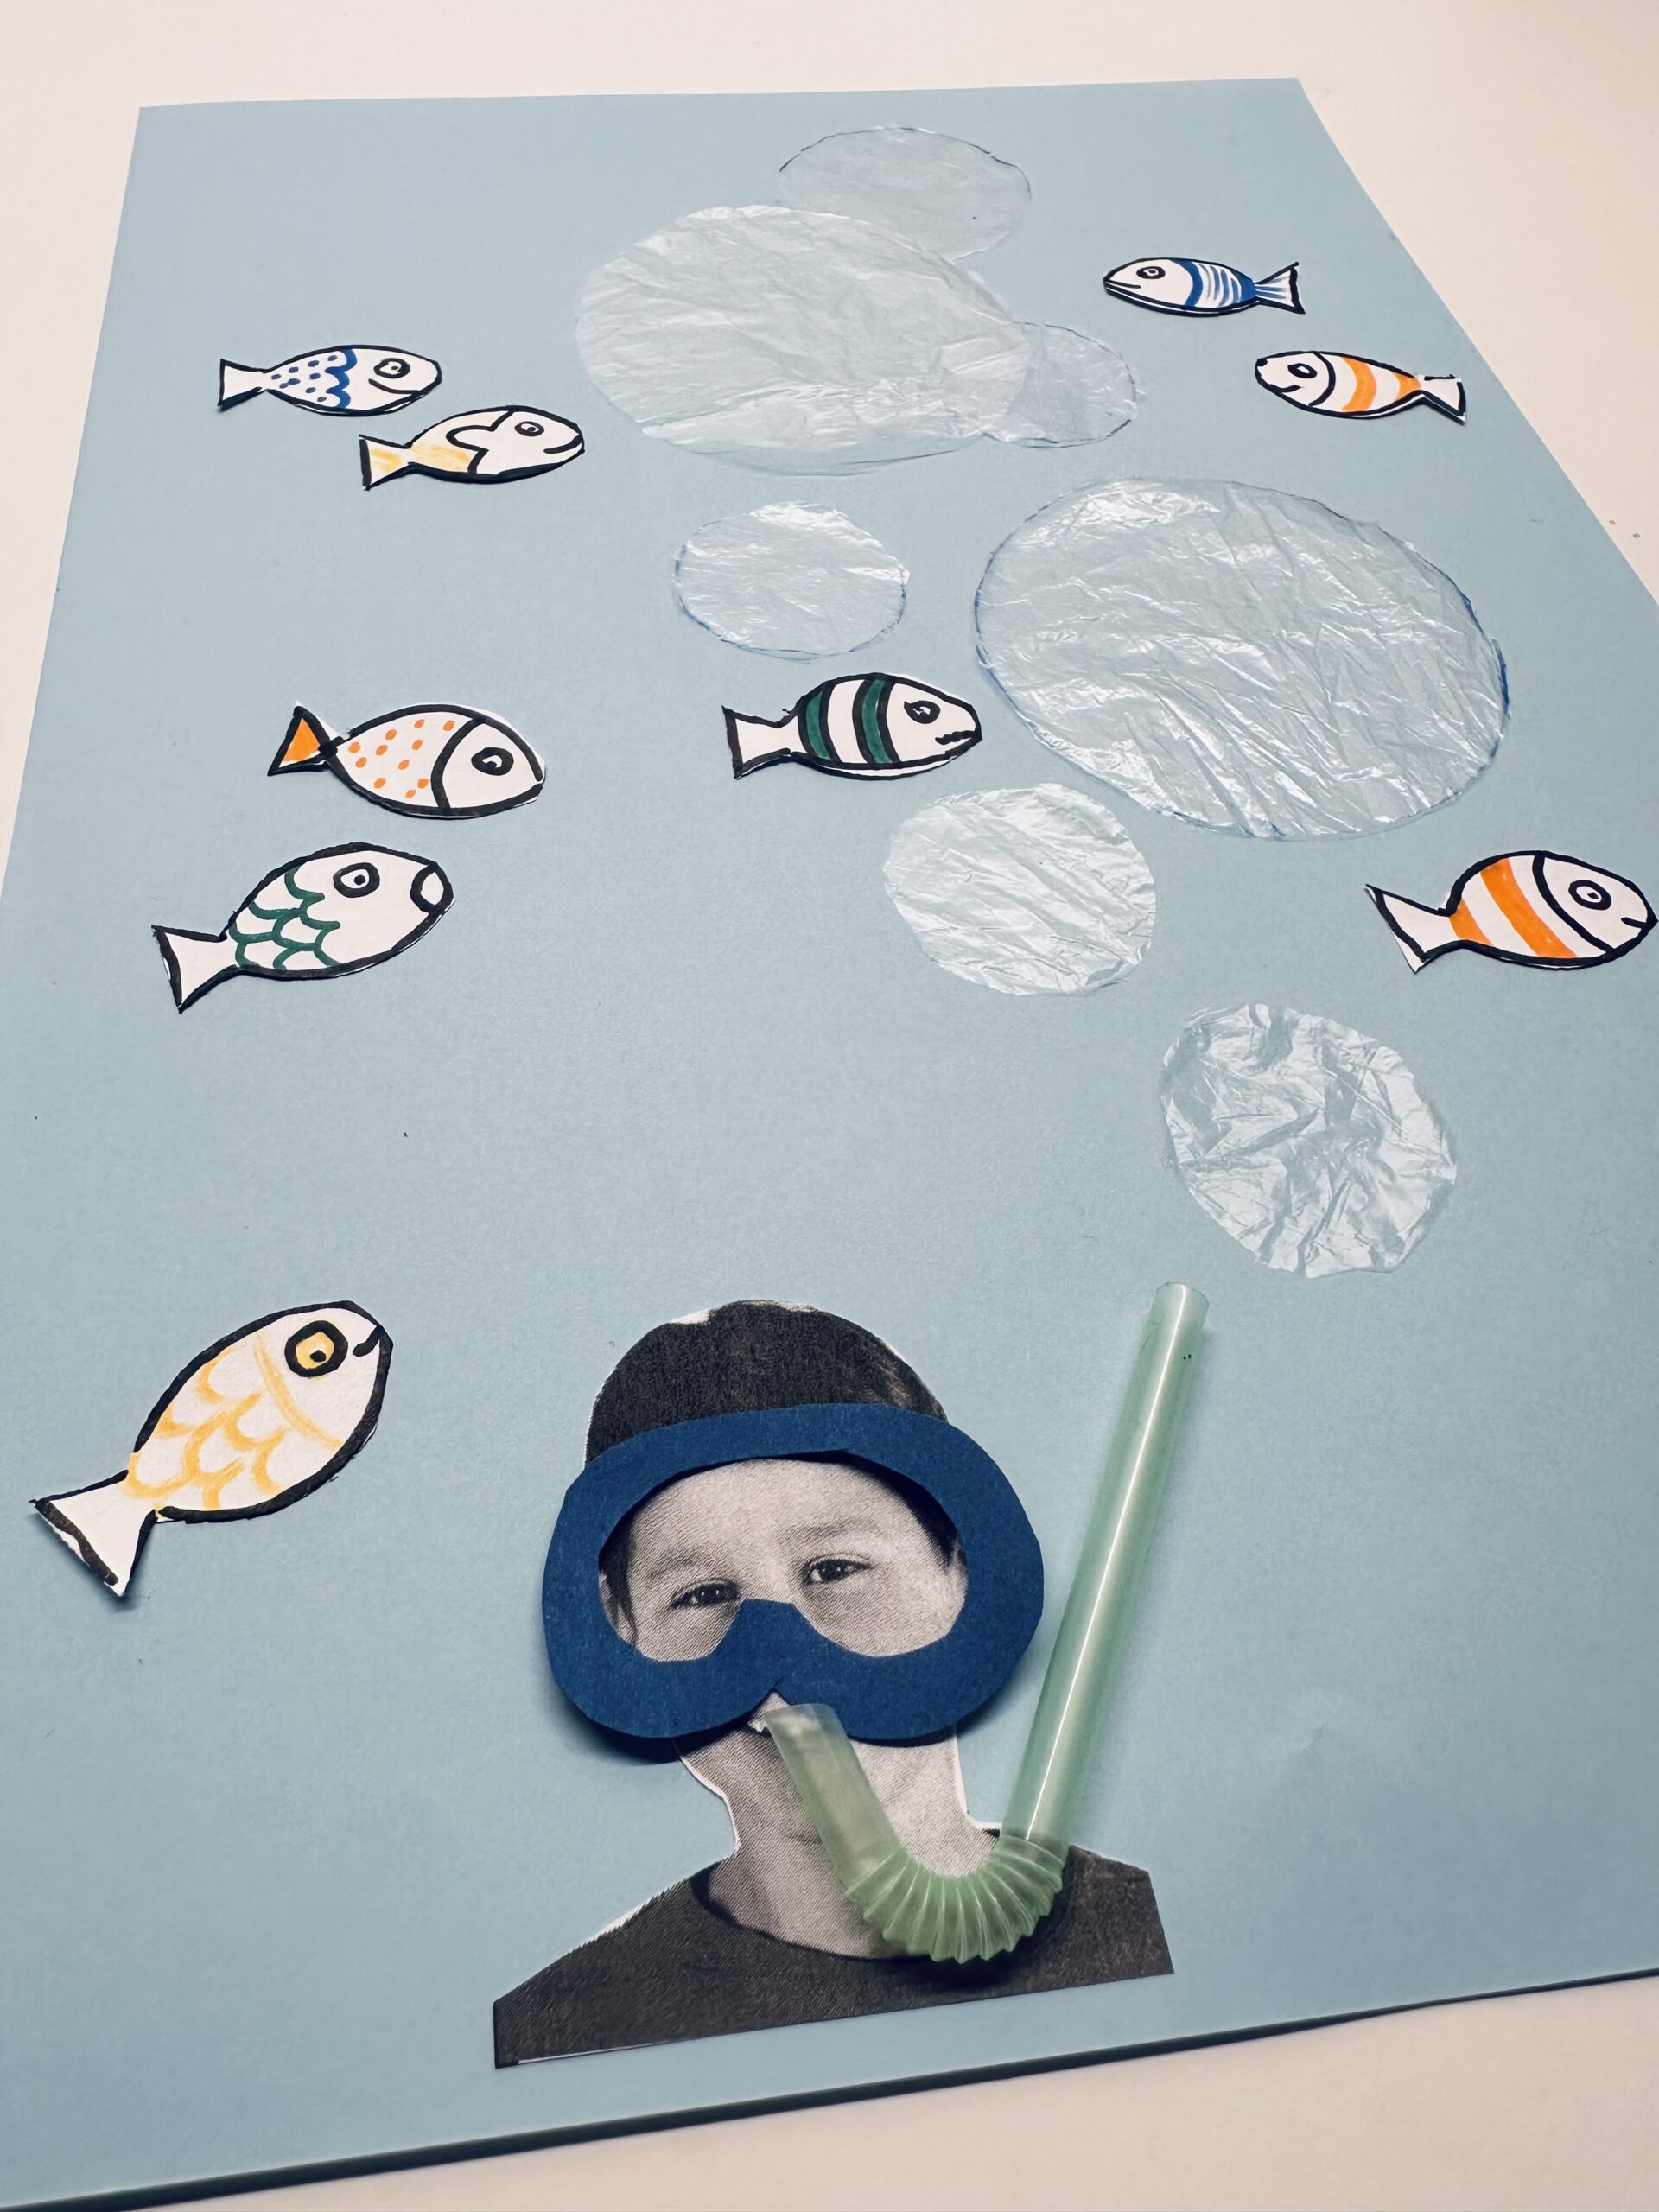 Bild zum Schritt 32 für das Bastel- und DIY-Abenteuer für Kinder: 'Wenn euch die Anordnung gefällt, klebt alle Luftblasen und Fische...'